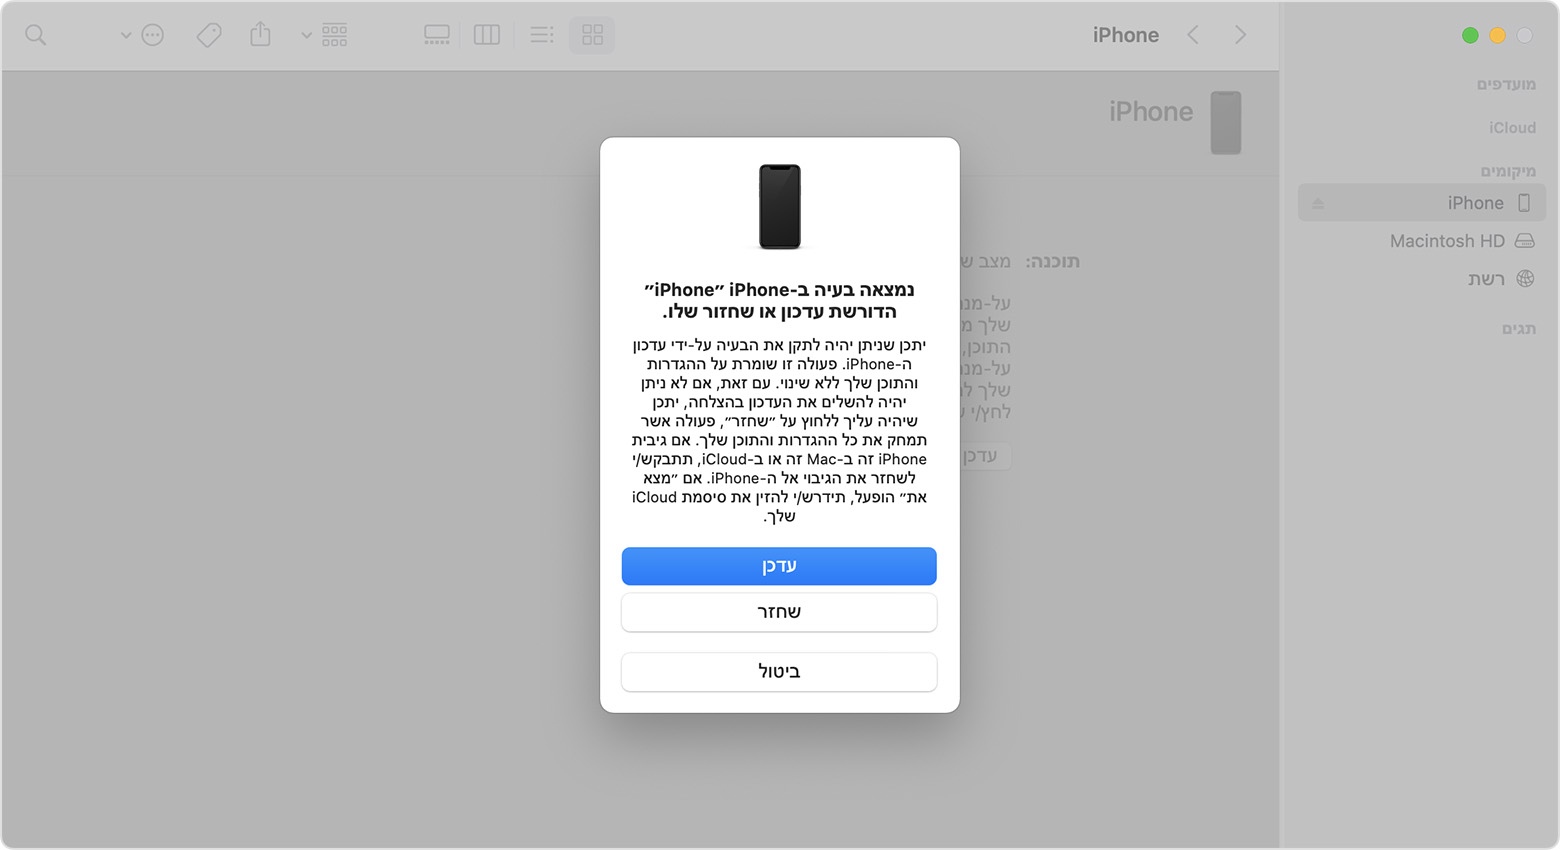 חלון של Finder שמציג בקשה עם בחירה לעדכן או לשחזר את ה-iPhone. האפשרות לעדכן נבחרה.